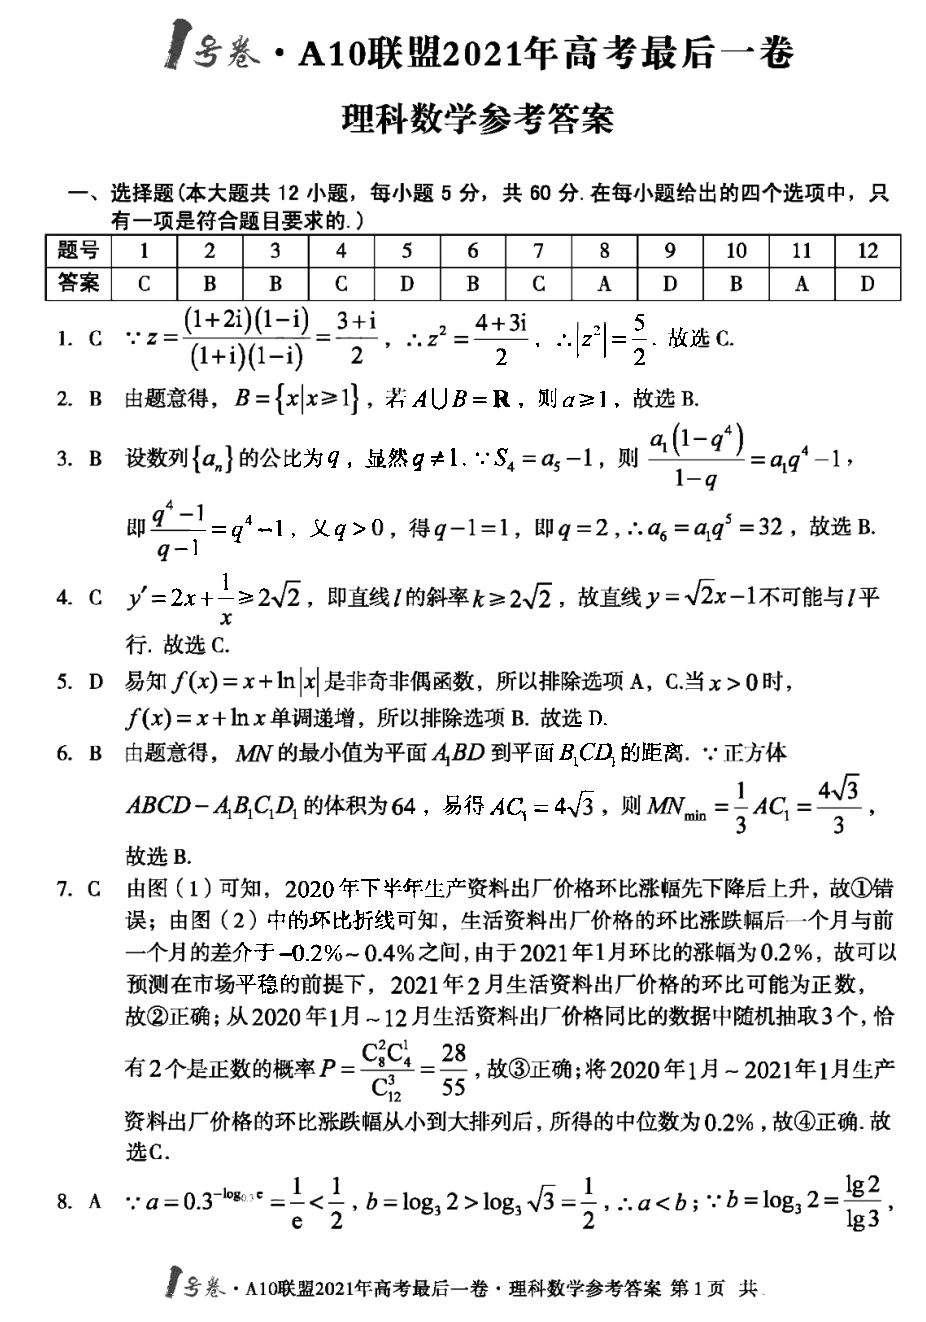 安徽省A10联盟2021年高考最后一卷理科数学试题答案1